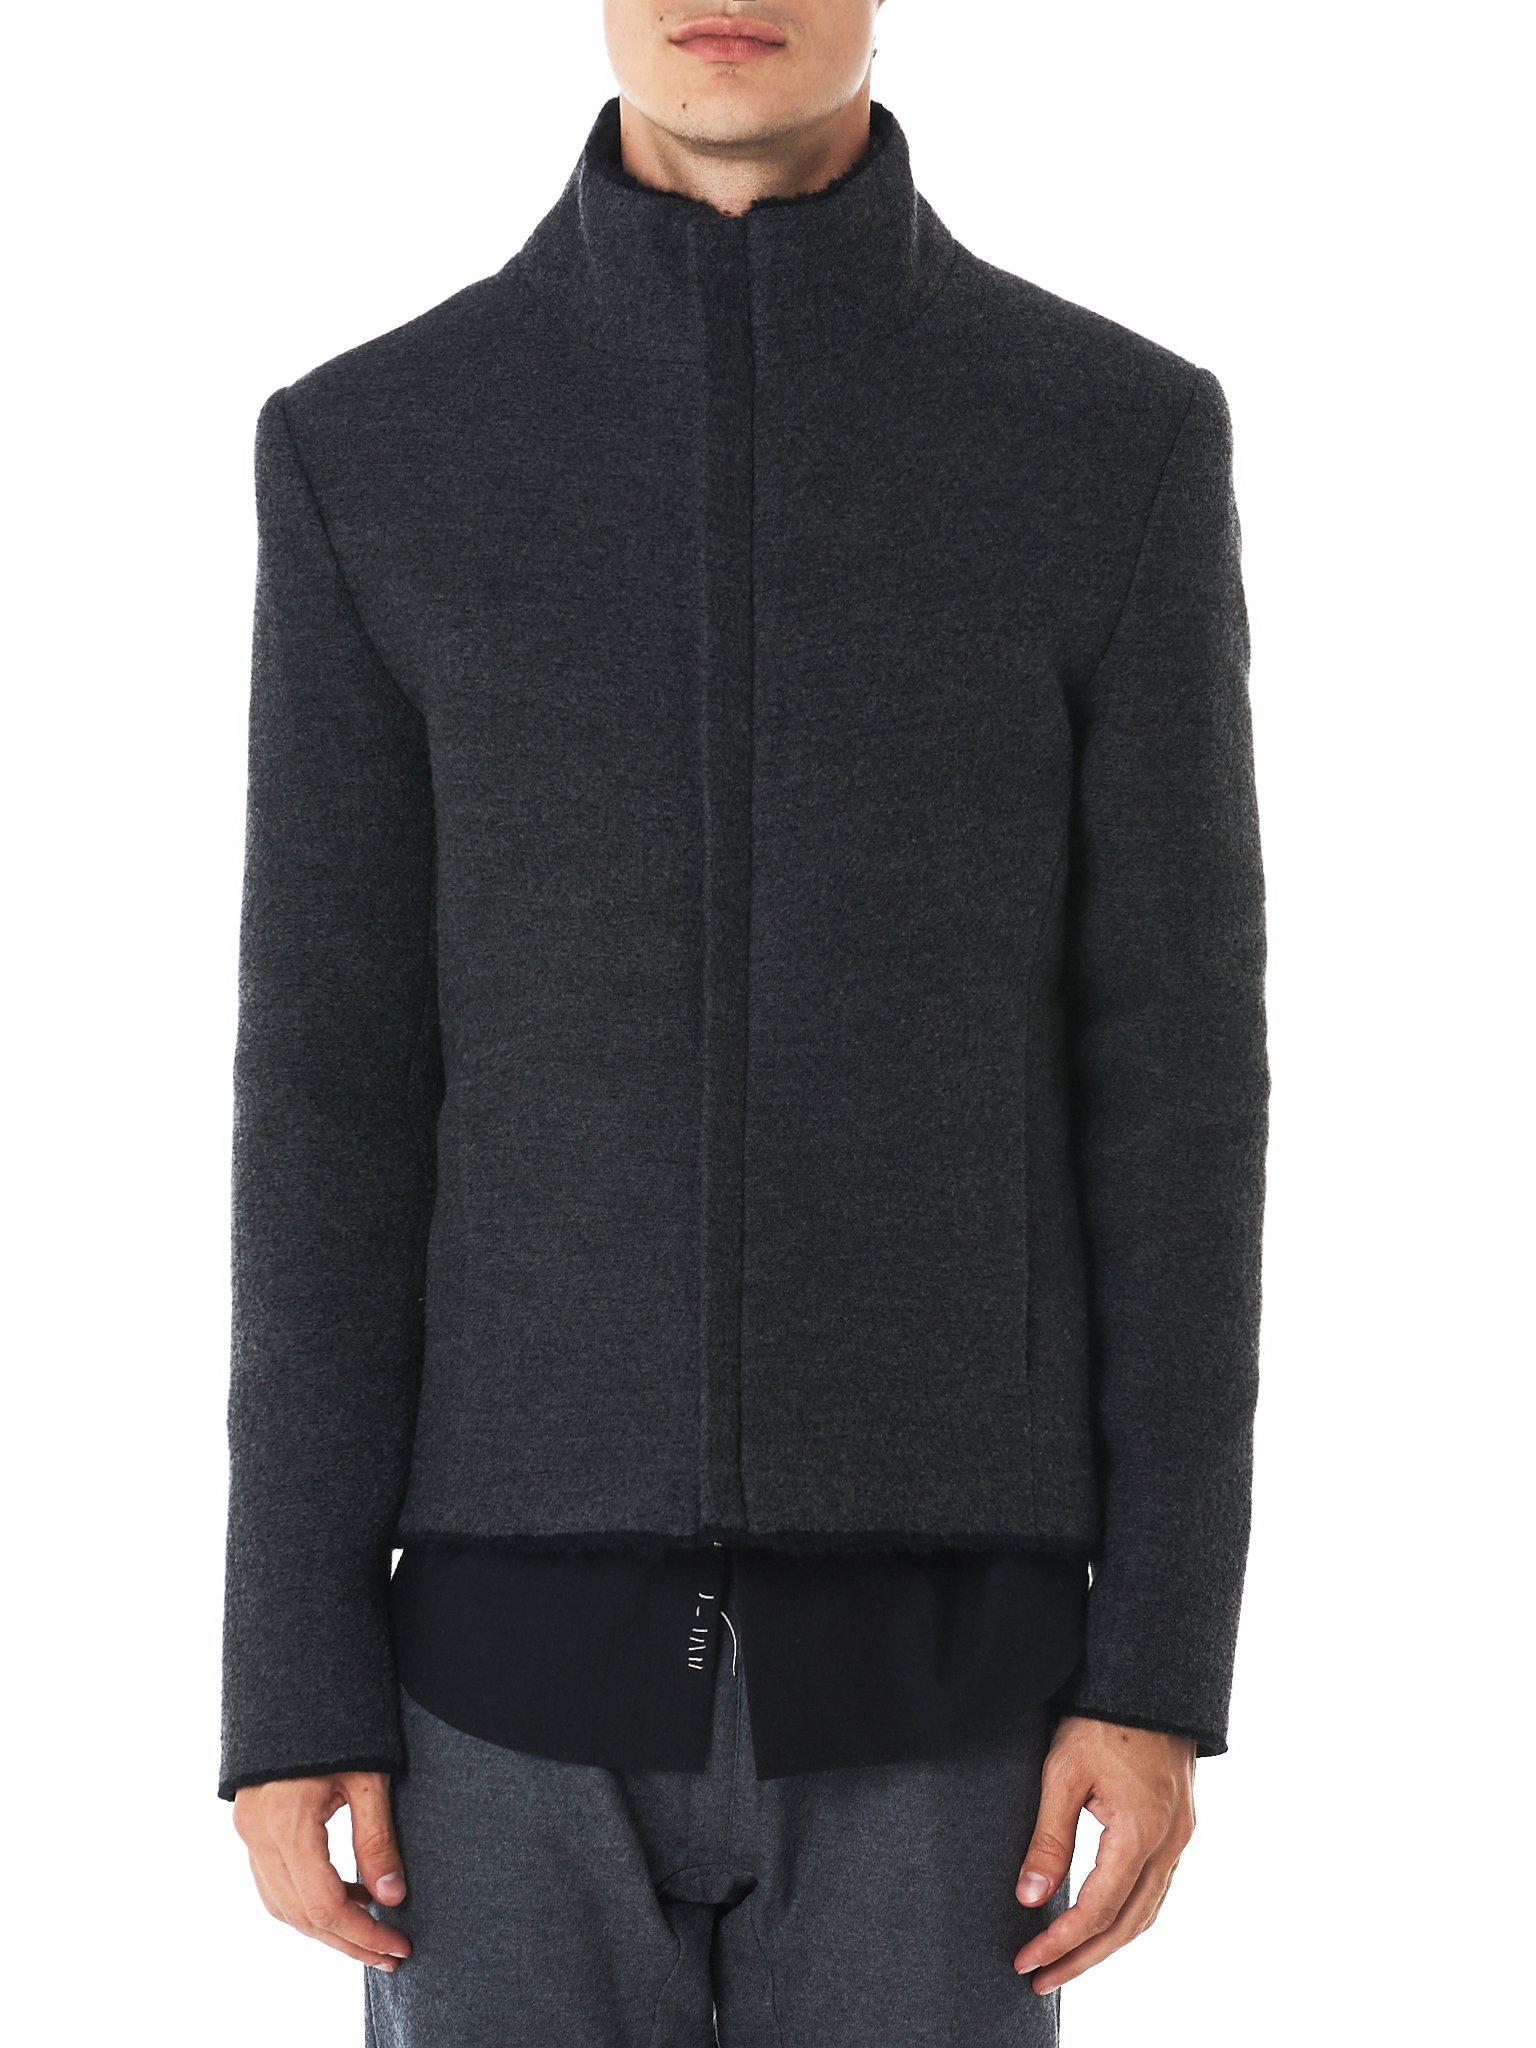 Label Under Construction Wool Felted Turtleneck Jacket for Men - Lyst